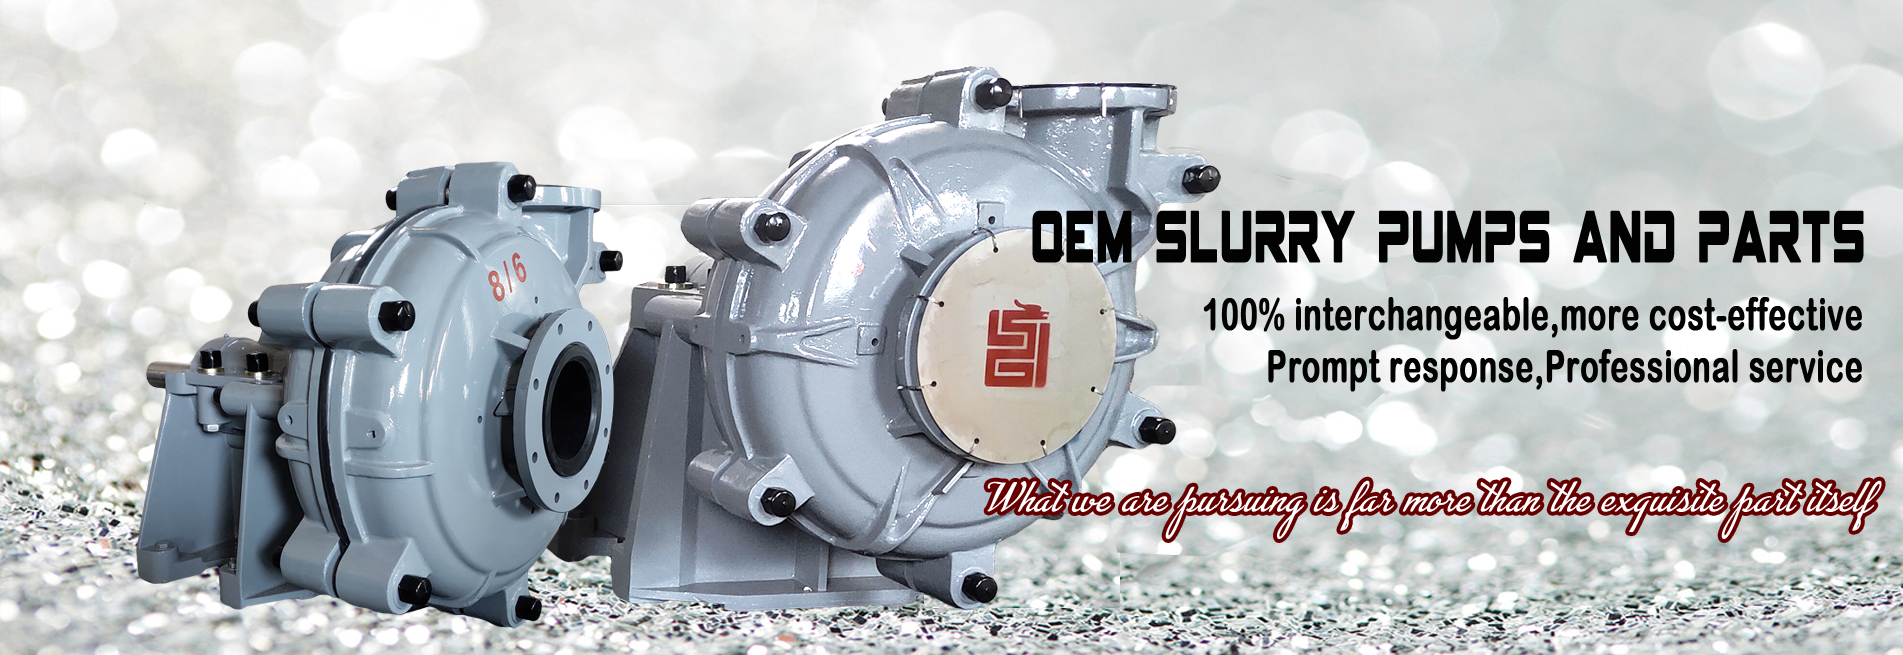 Slurry pump,Centrifugal pump,Slag pump,Mining pump,Warman Pump,Industrial pump,Sump Pump,Gravel Pump